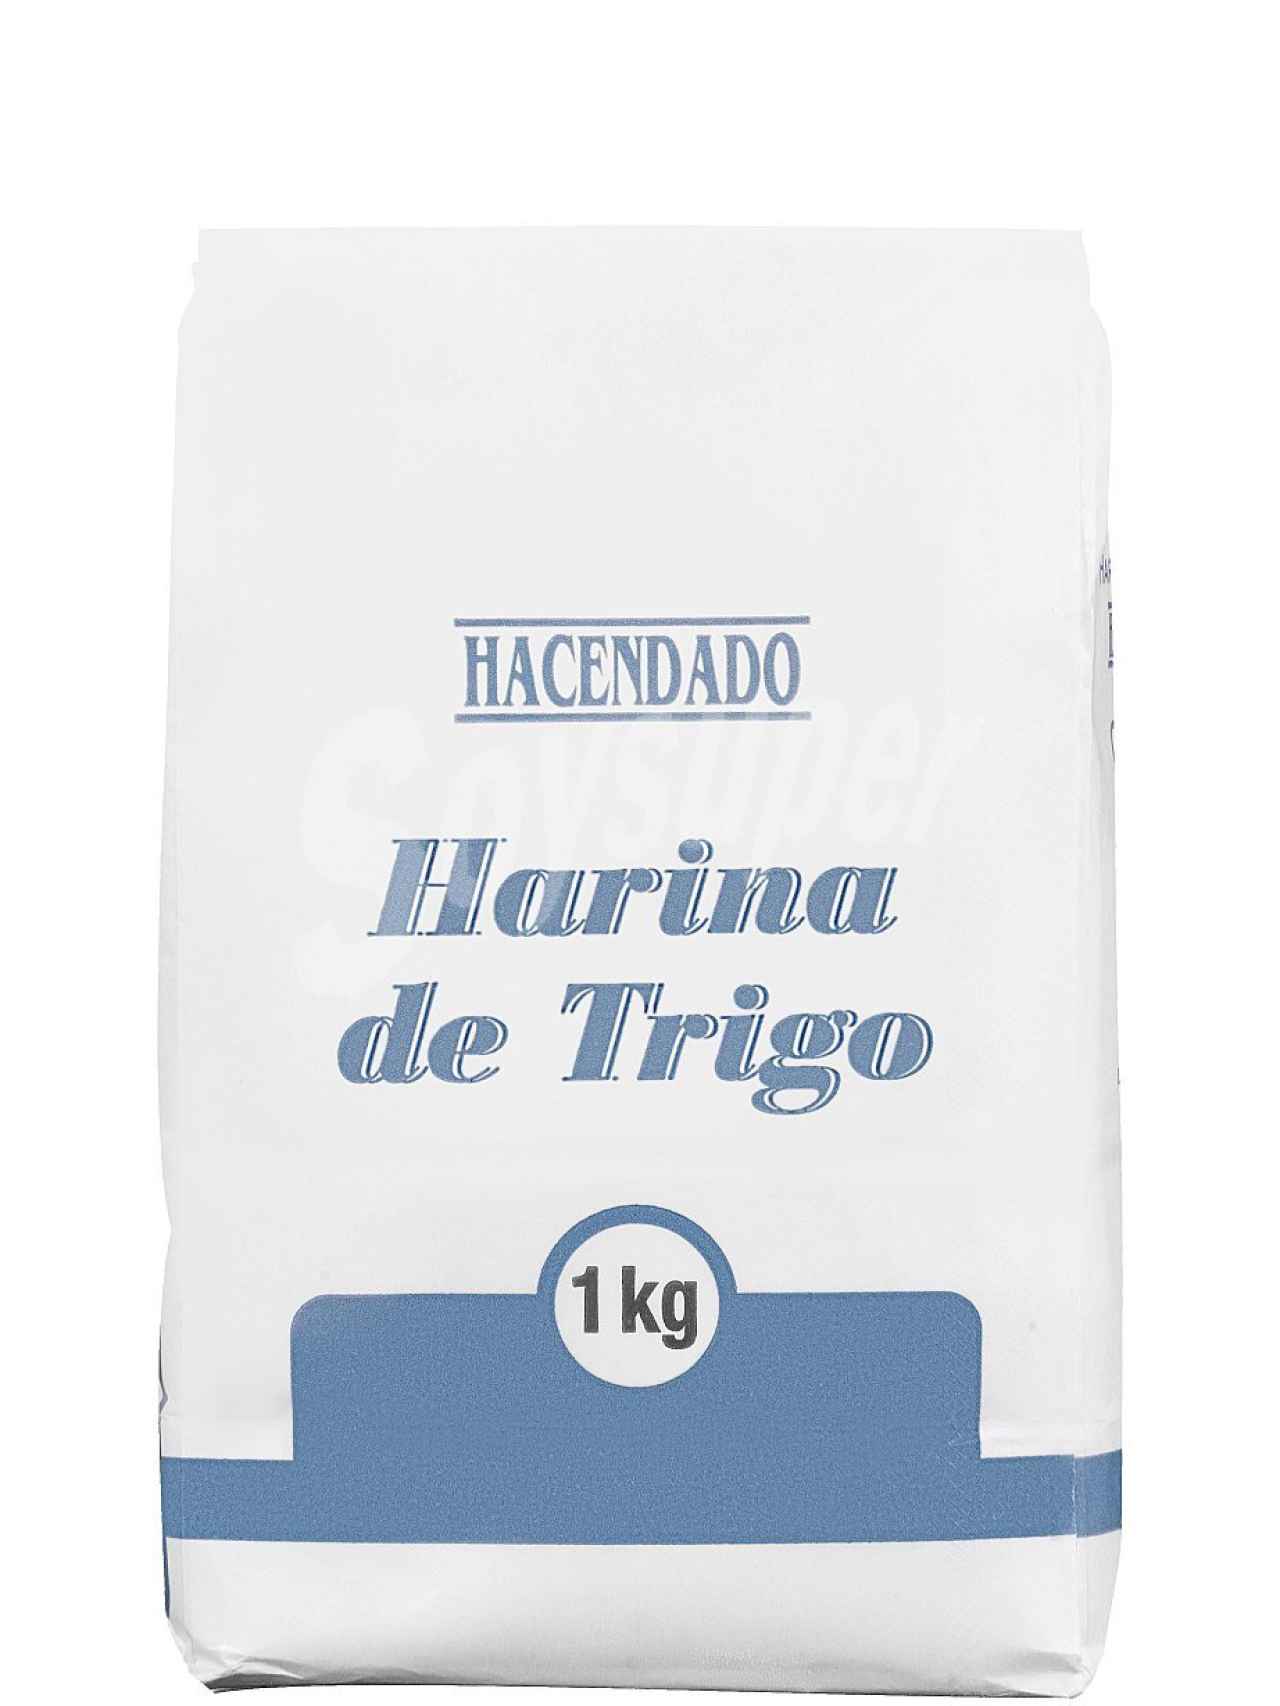 La harina de trigo de Hacendado, la marca blanca de Mercadona.